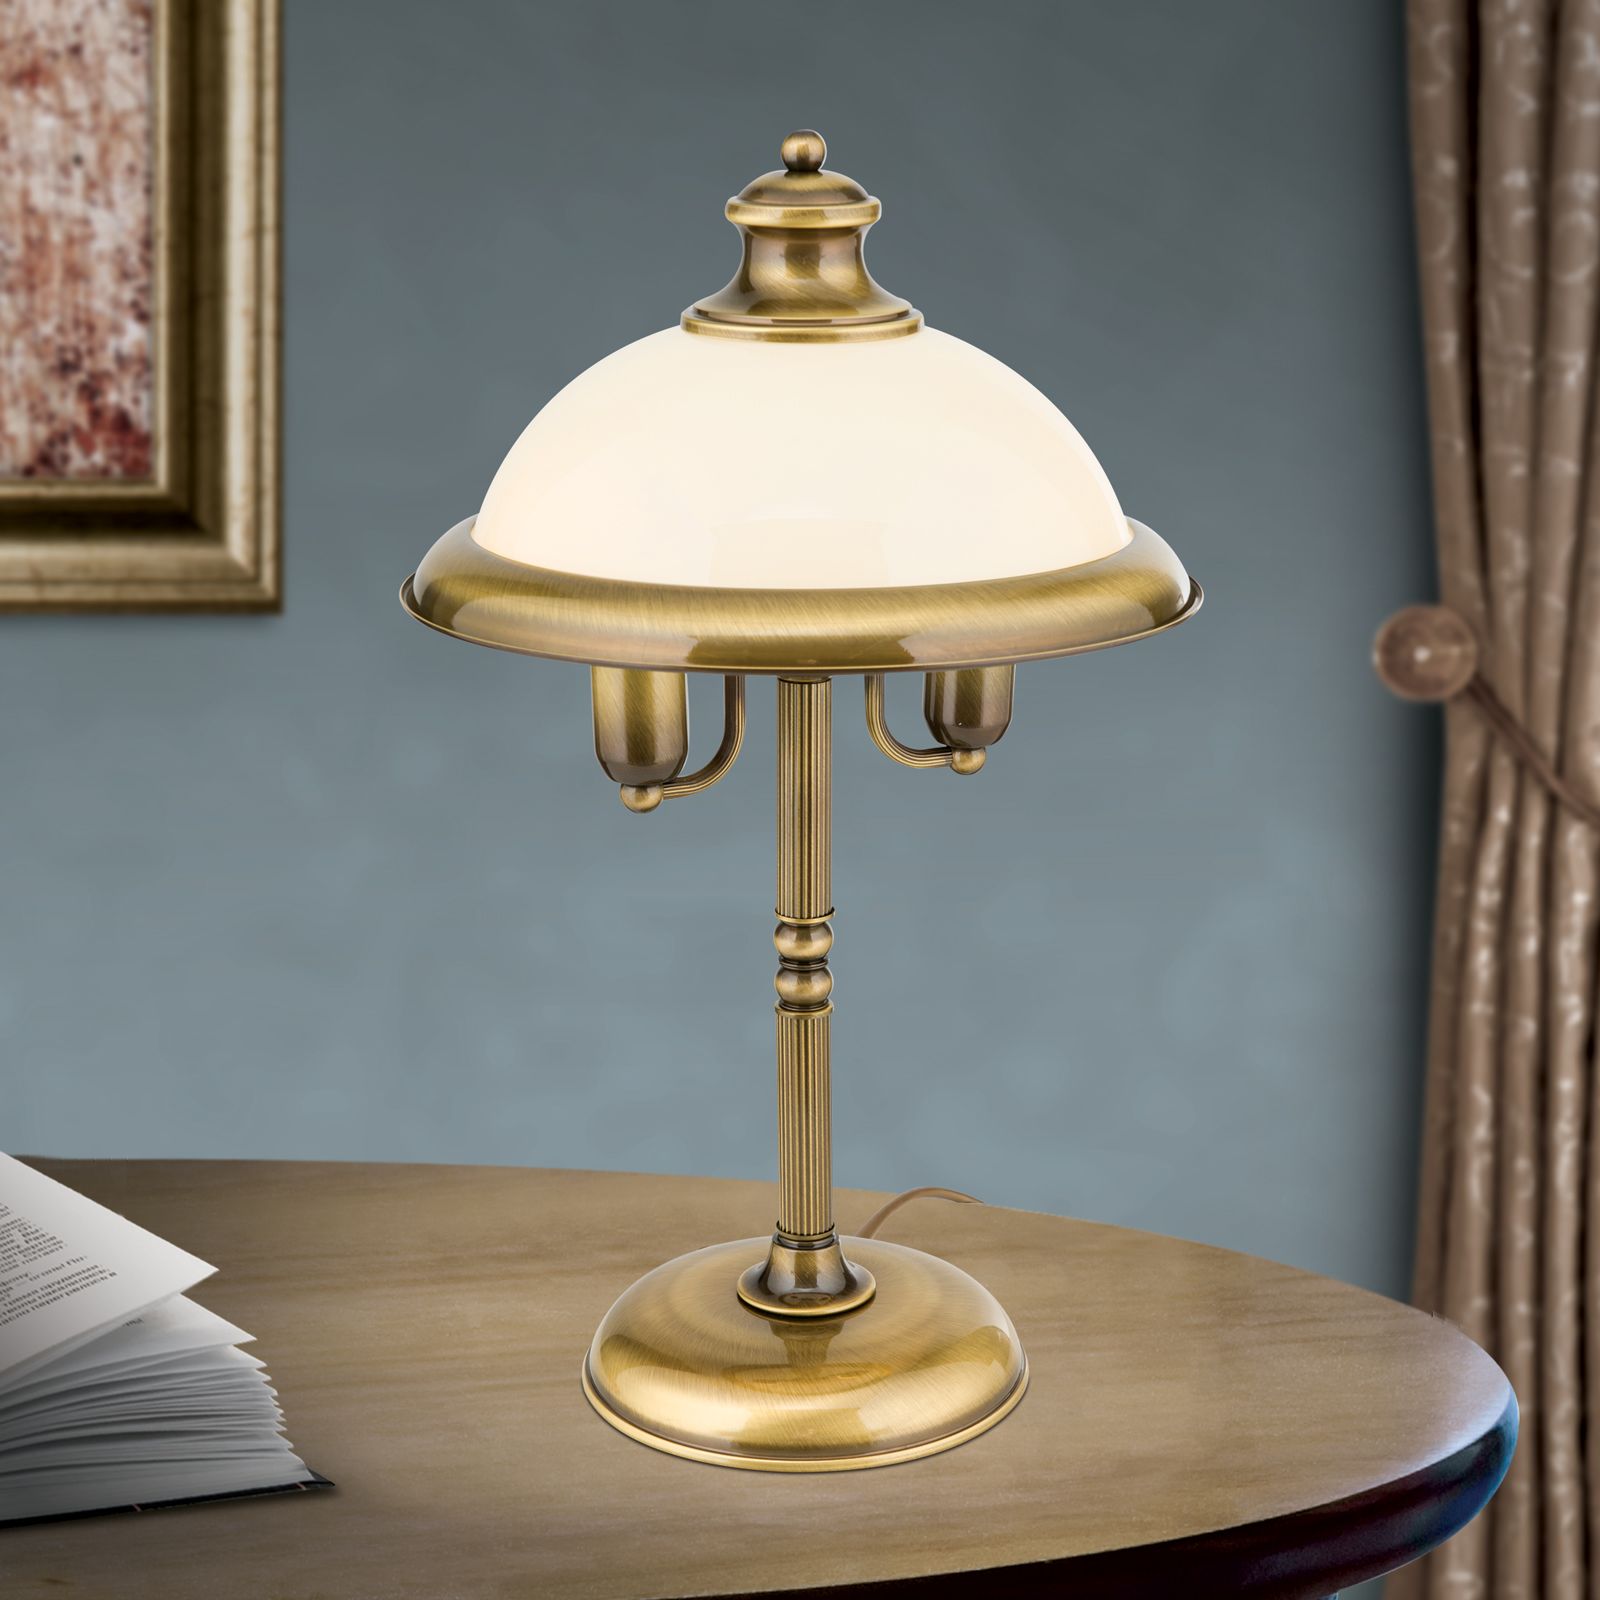 Lampa Stecker mit Schnellanschlüssen online kaufen